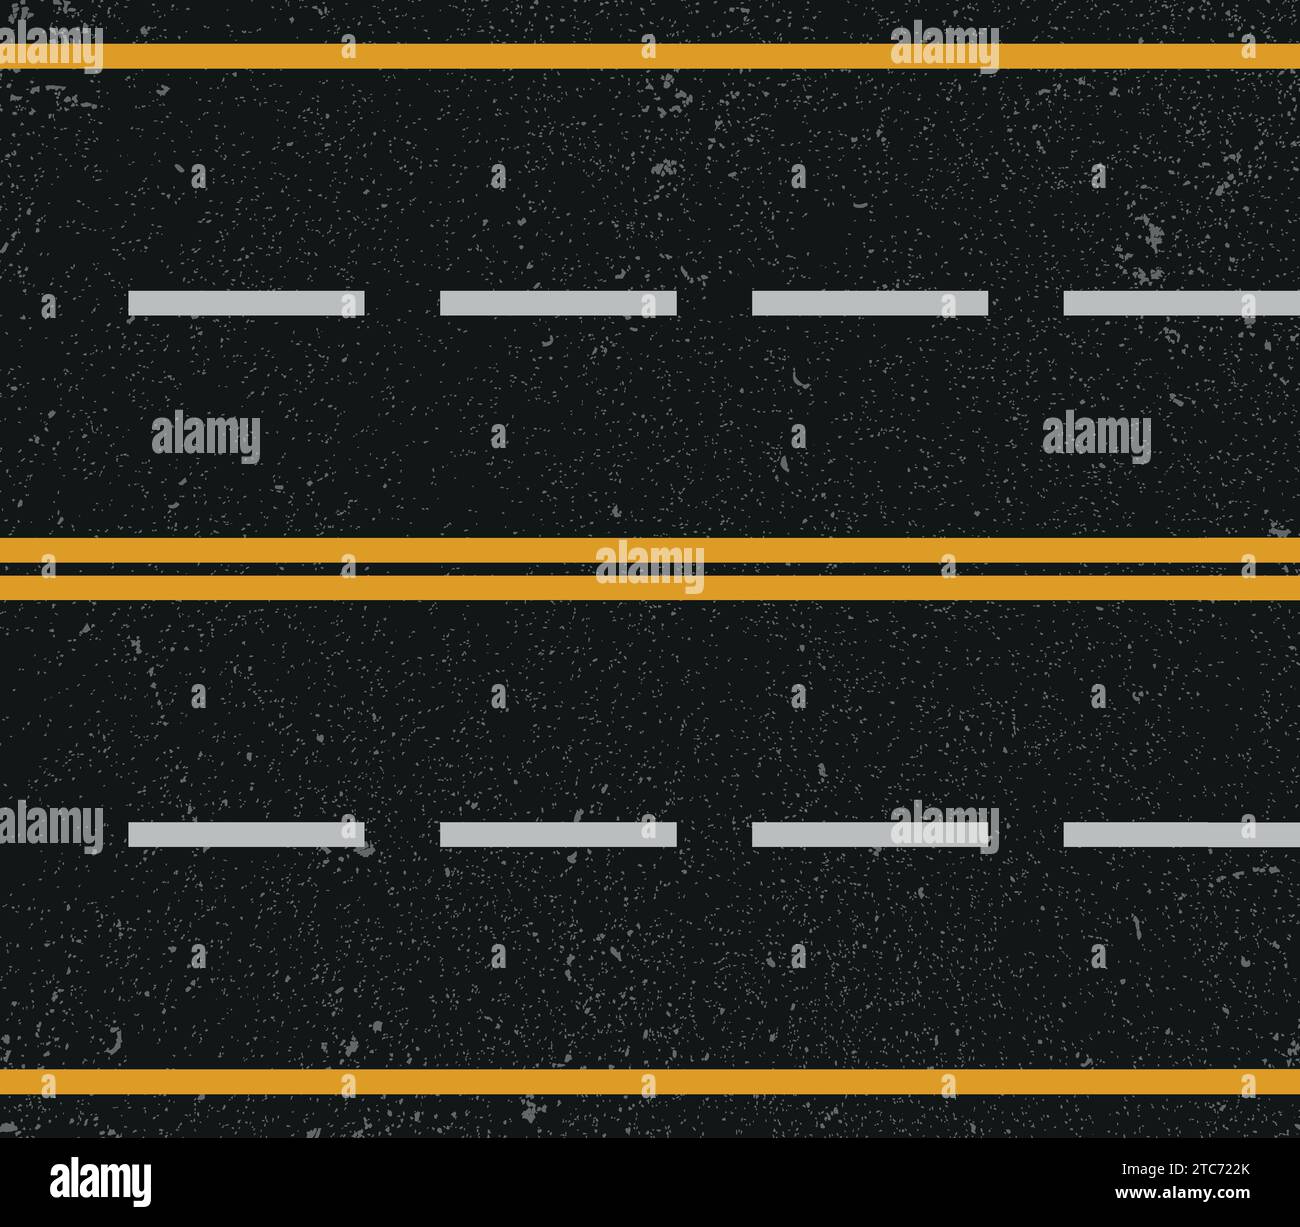 Struttura stradale asfaltata con segnaletica stradale, strada asfaltata con strisce divisorie illustrazione vettoriale. Illustrazione Vettoriale